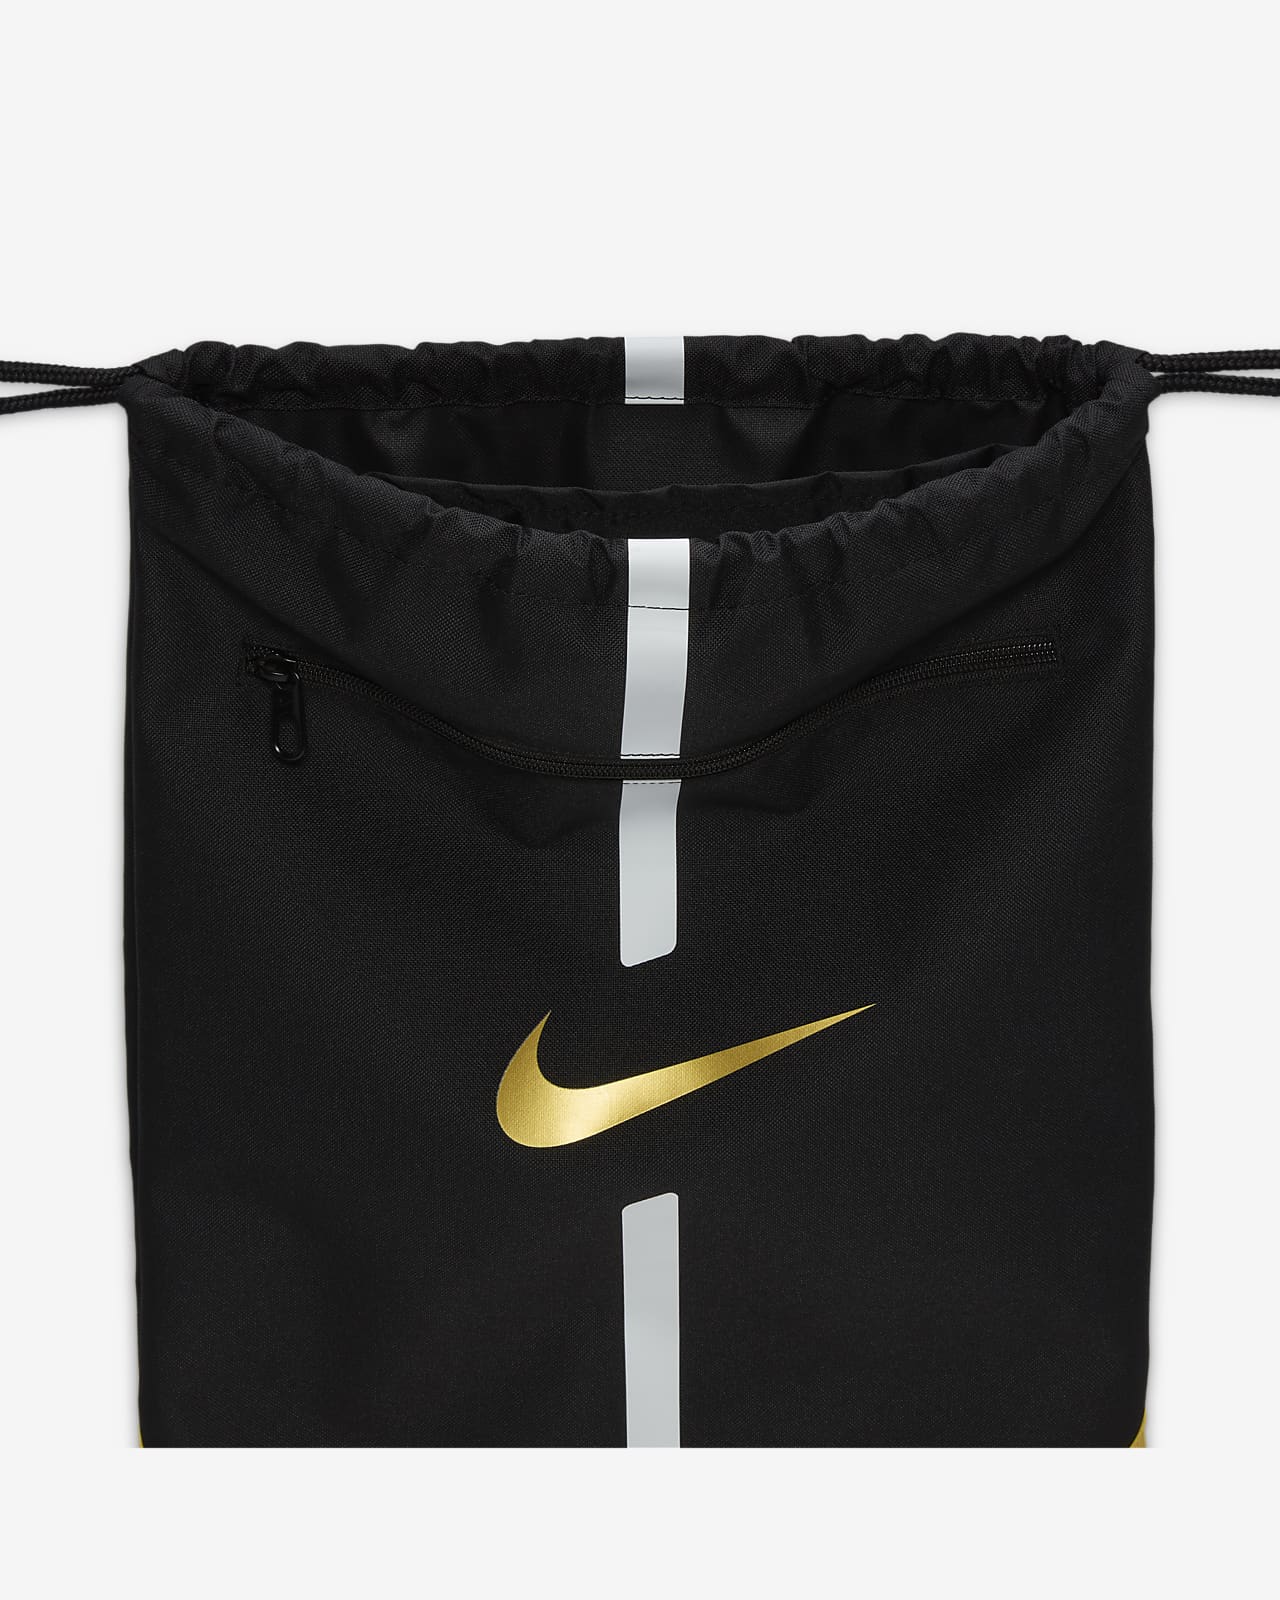 Shop Nike Brasilia Training Gymsack, Drawstri – Luggage Factory